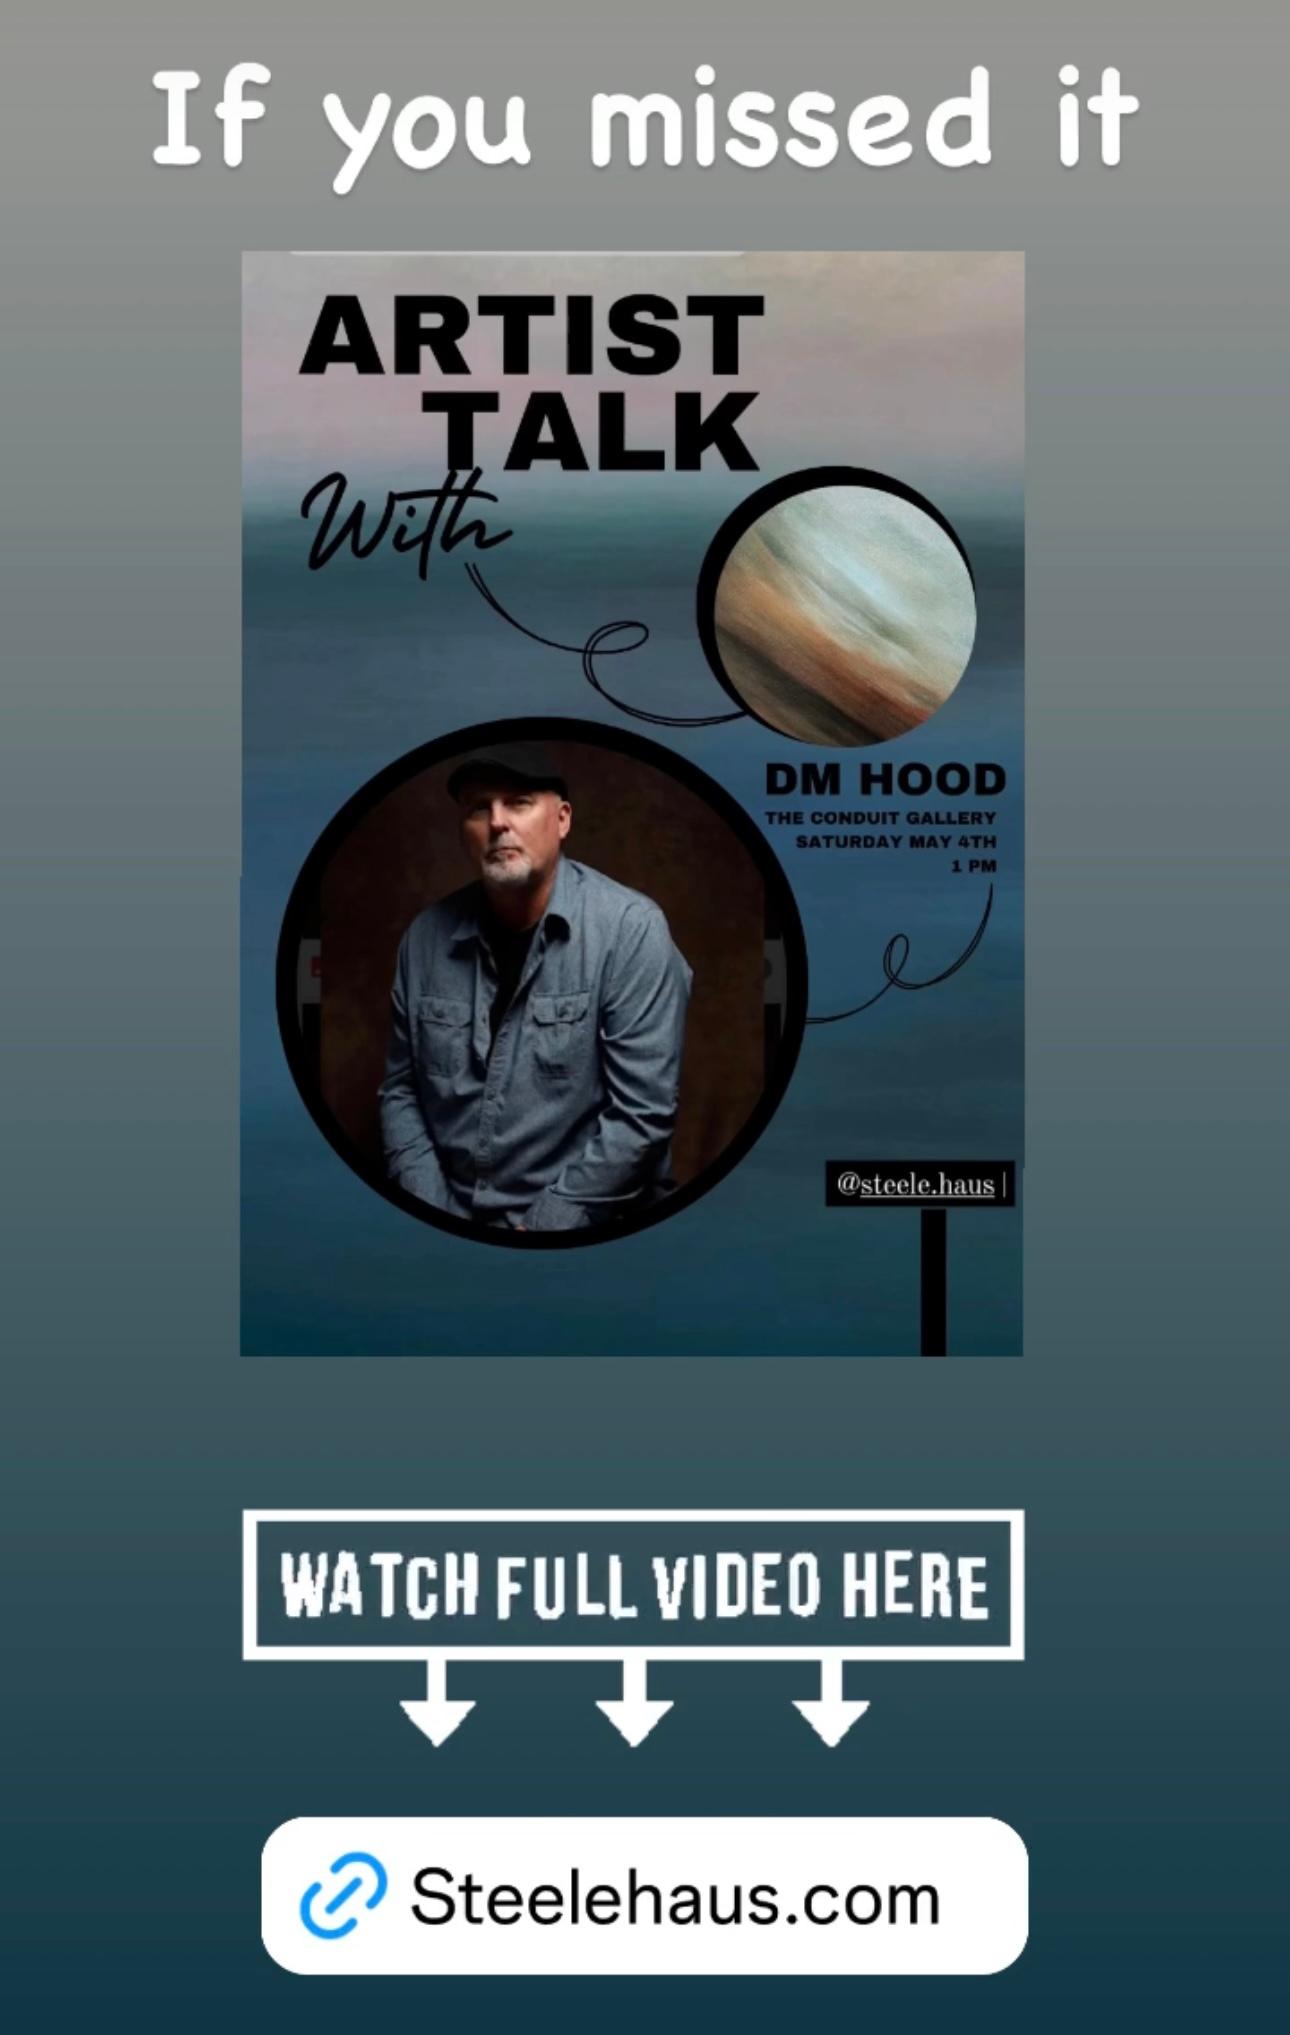 Steelehaus.com poster featuring Dennis Hood as the Artist Talk